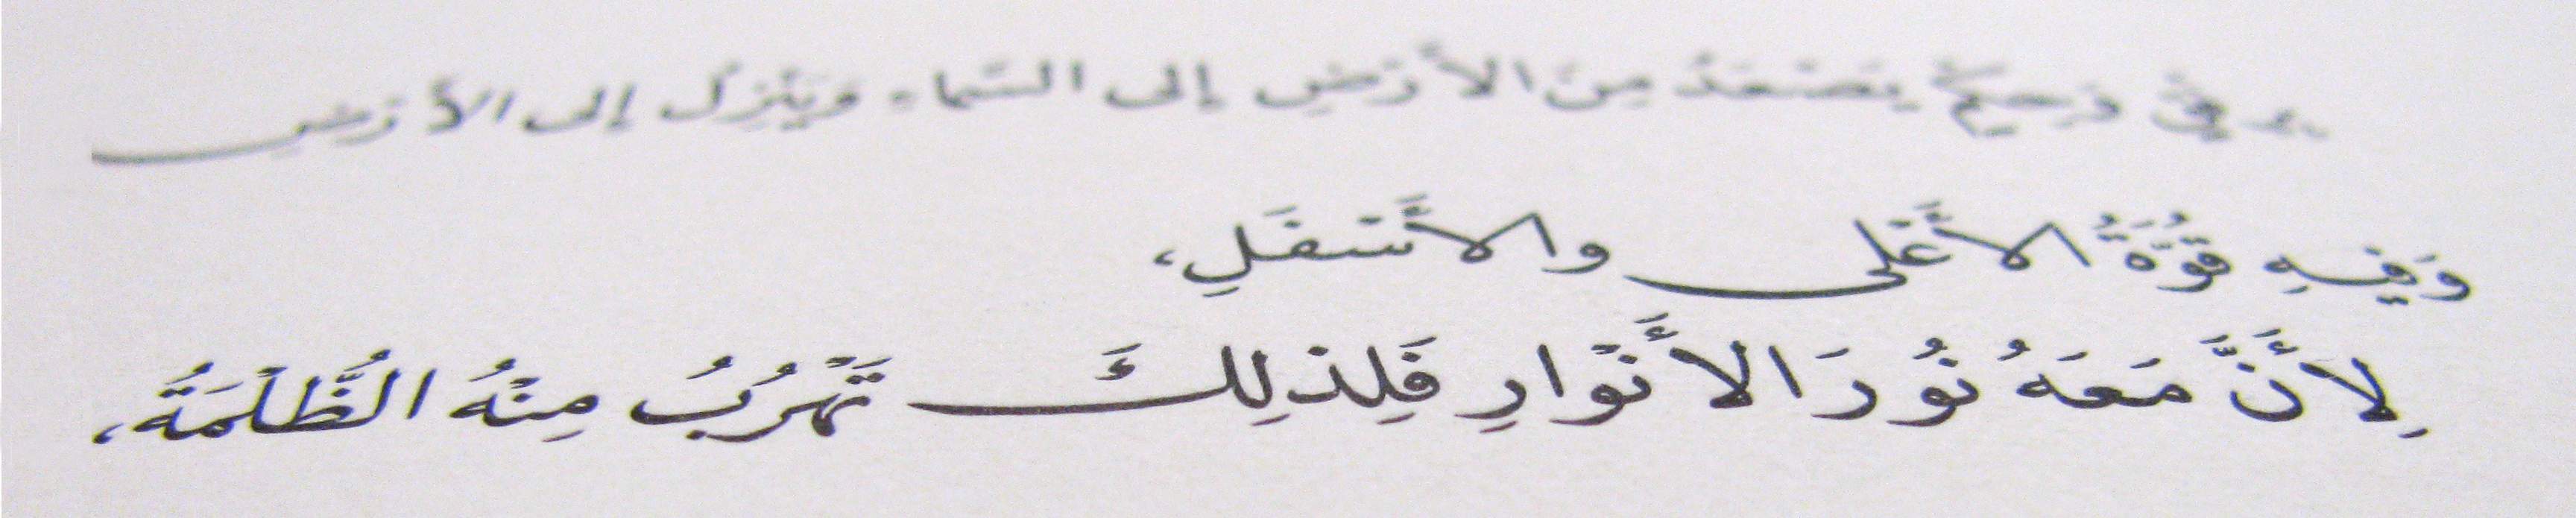 arabic-text-2